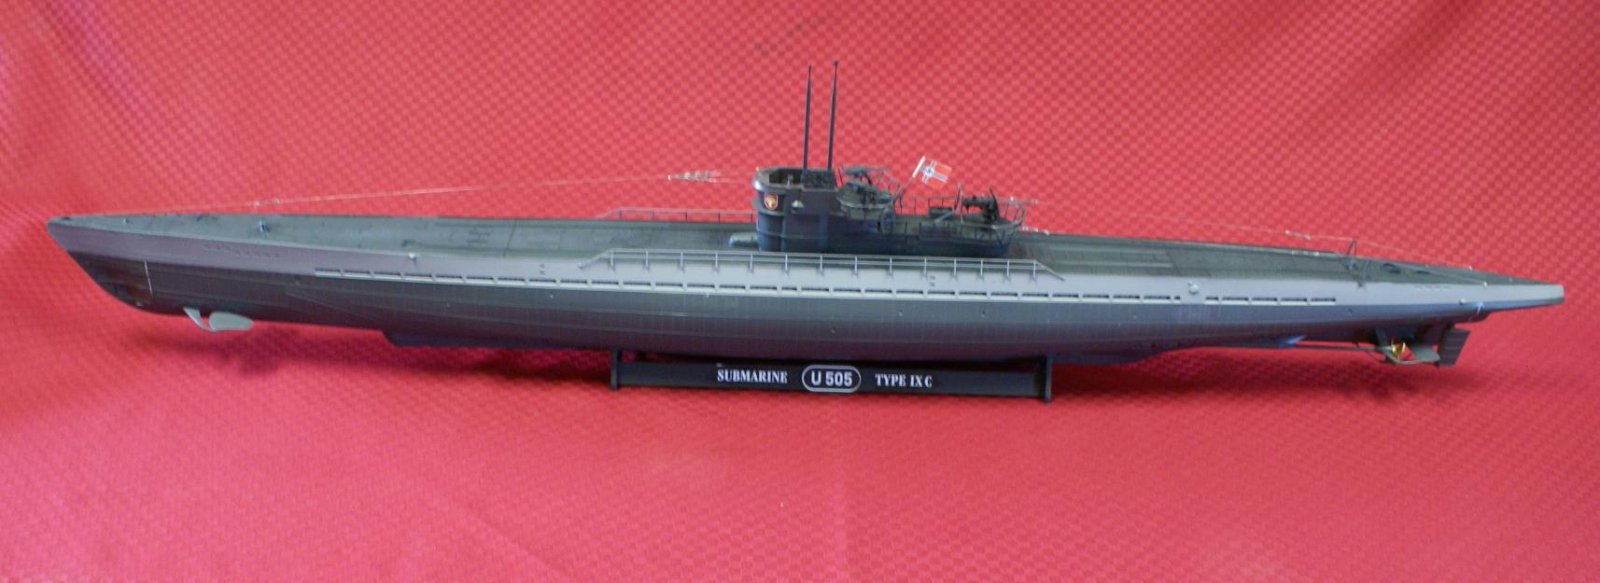 Пл 600. U-505 подводная лодка. U-Boat Type IX. Модель немецкой подводной лодки u-505. U-518 подводная лодка.